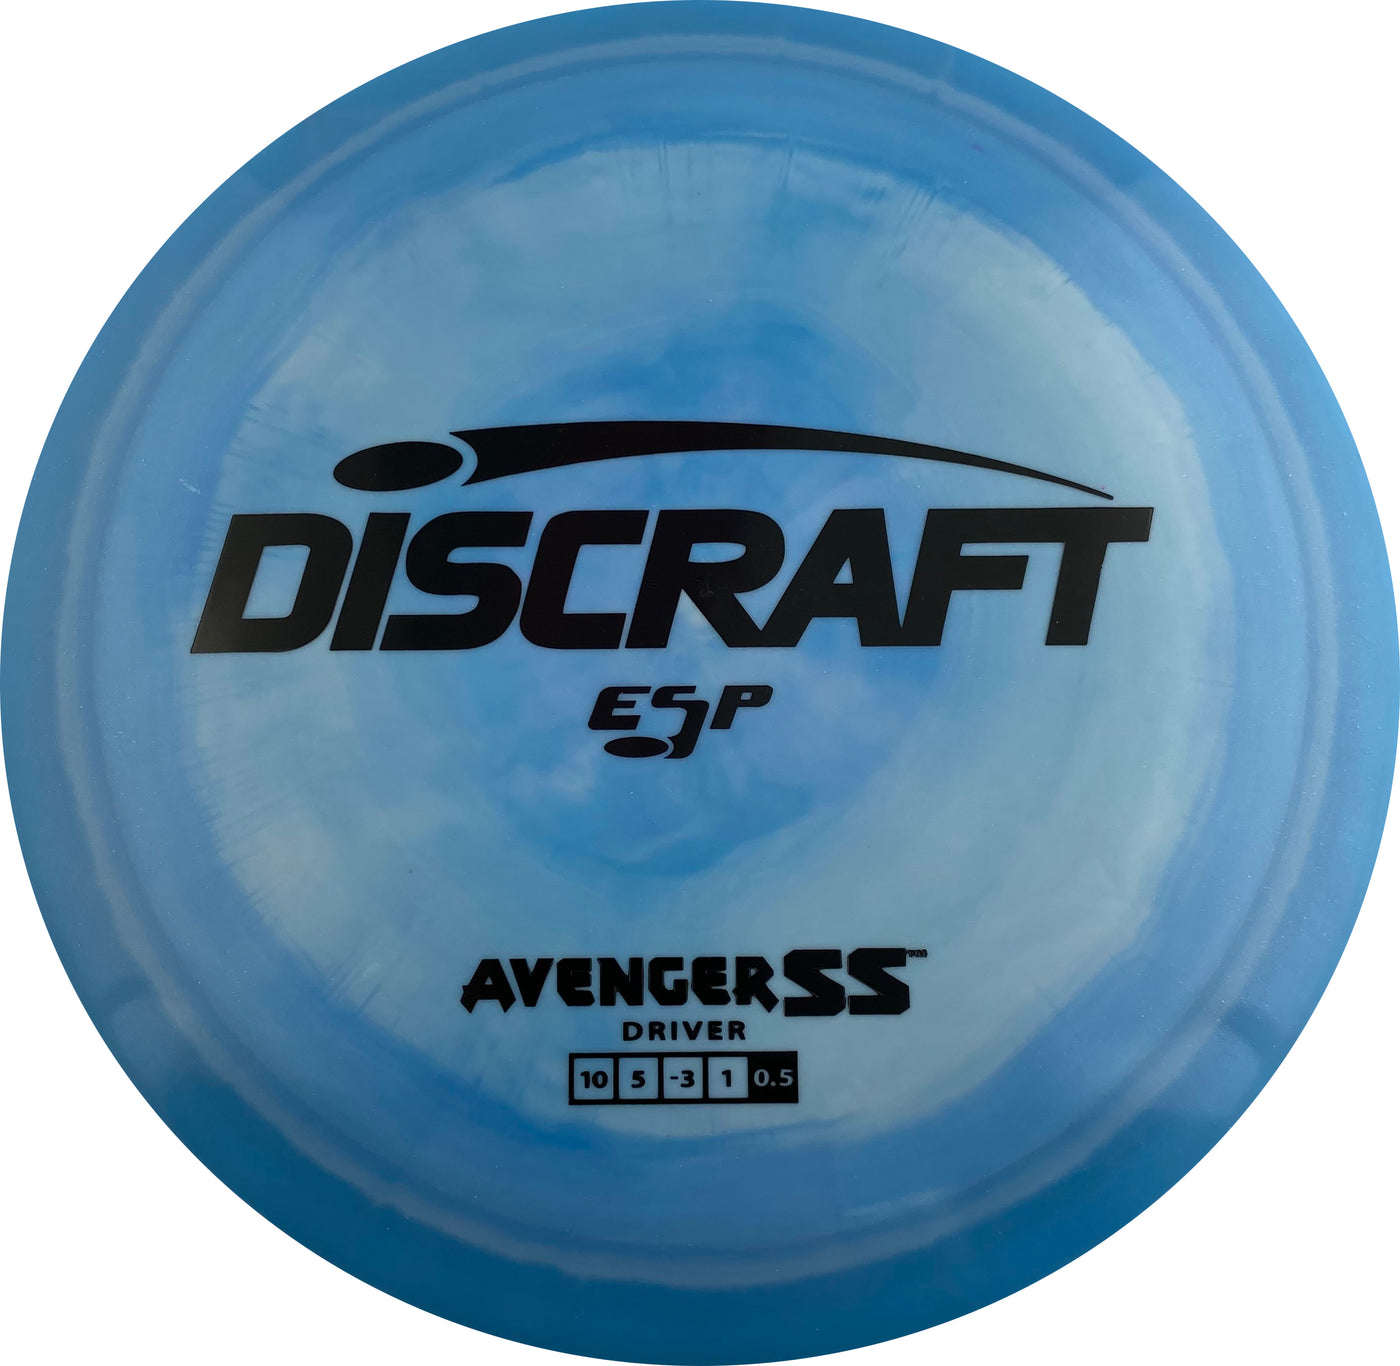 Discraft ESP Avenger SS Distance Driver - Speed 10